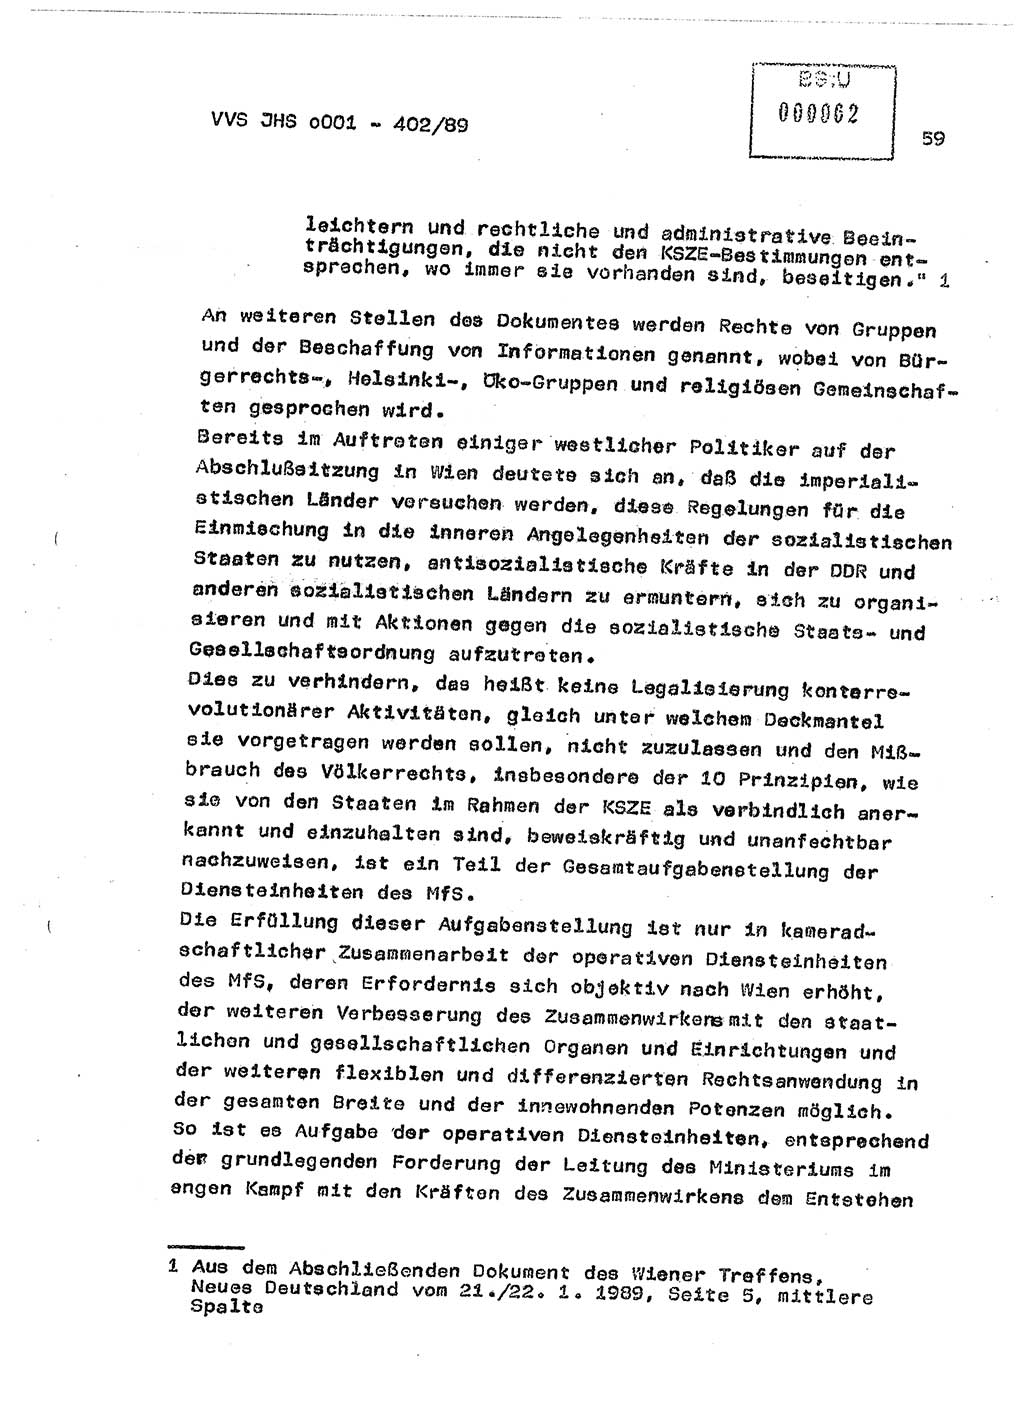 Diplomarbeit Major Günter Müller (HA Ⅸ/9), Ministerium für Staatssicherheit (MfS) [Deutsche Demokratische Republik (DDR)], Juristische Hochschule (JHS), Vertrauliche Verschlußsache (VVS) o001-402/89, Potsdam 1989, Seite 59 (Dipl.-Arb. MfS DDR JHS VVS o001-402/89 1989, S. 59)